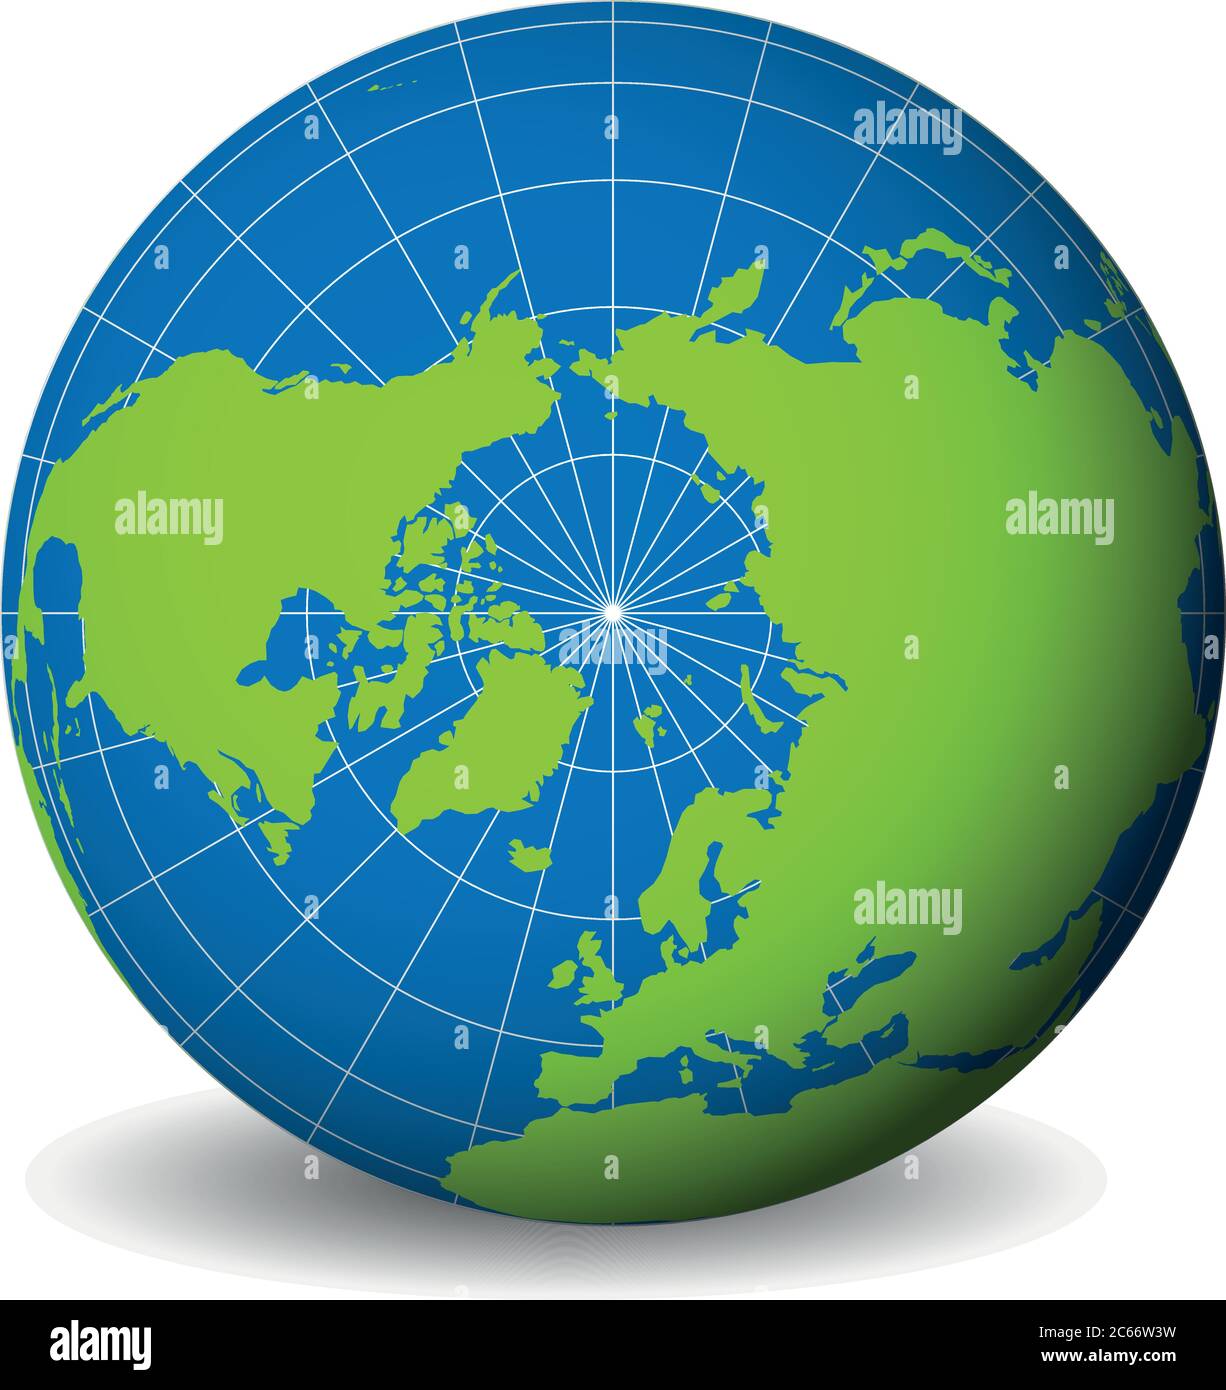 Globe terrestre avec carte verte du monde et mers bleues et océans axés sur l'océan Arctique et le pôle Nord. Avec des méridiens blancs fins et des parallèles. Illustration vectorielle 3D. Illustration de Vecteur